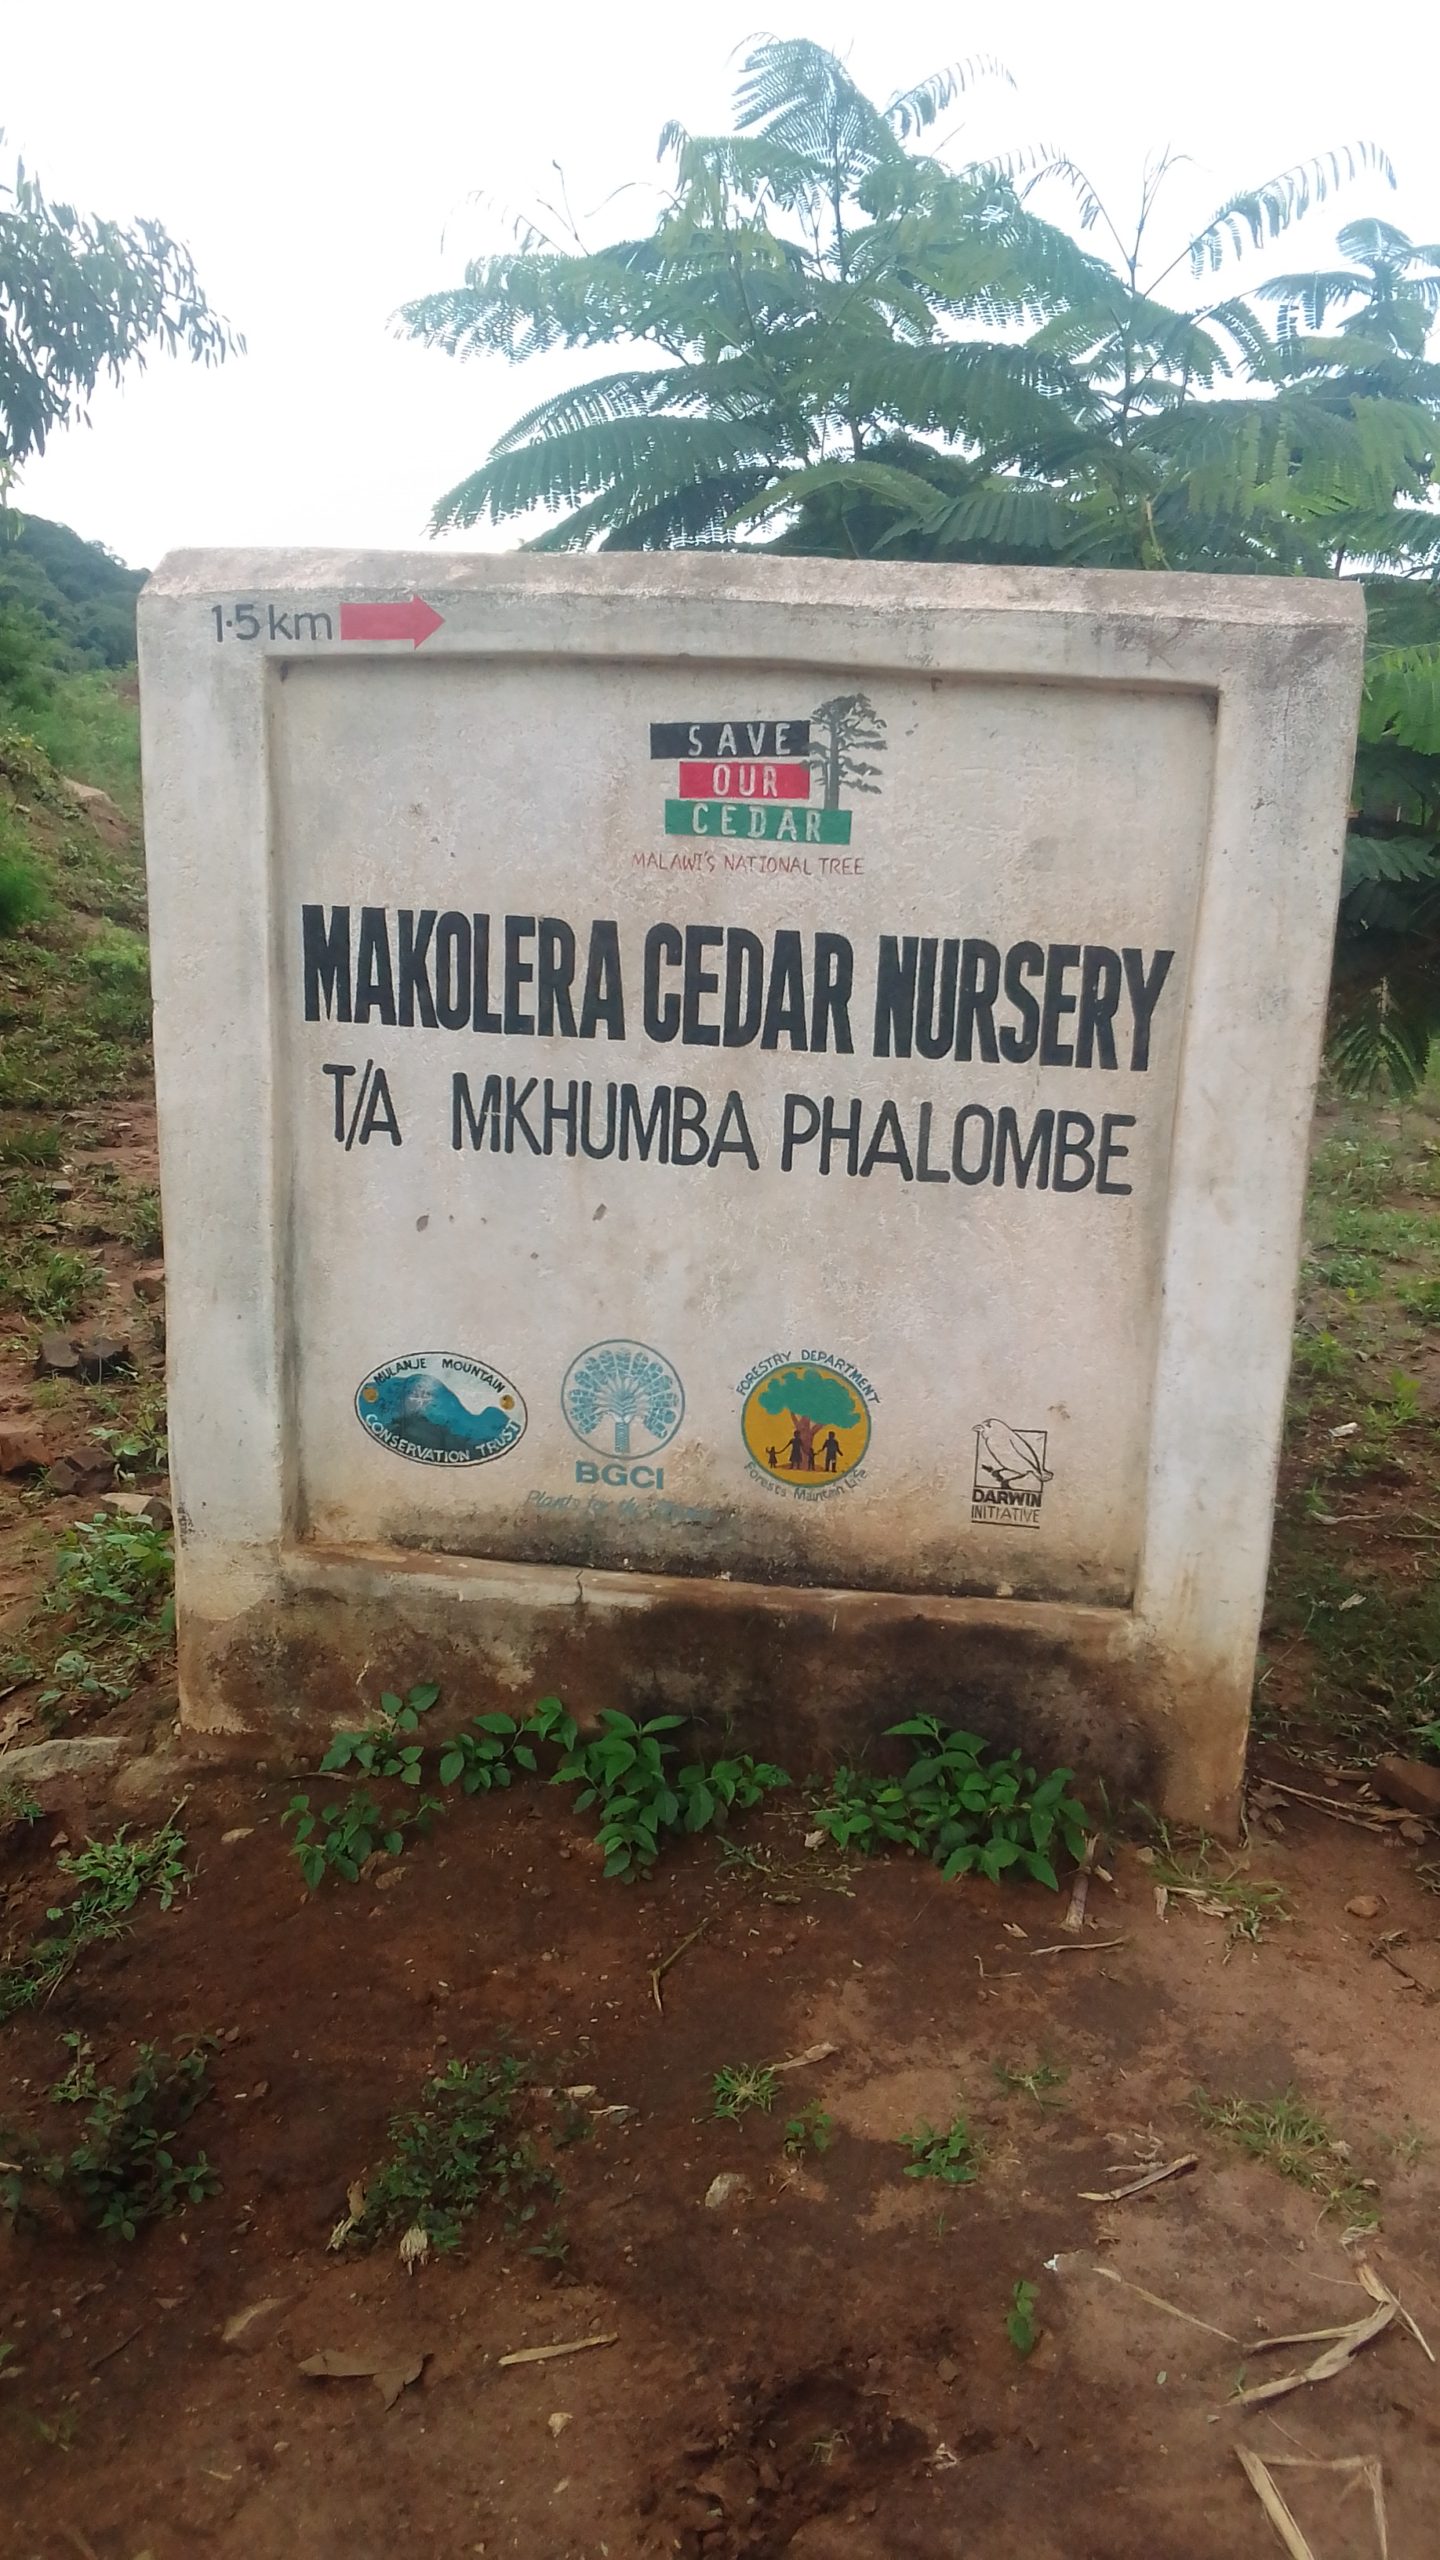 Makolera Cedar nursery sign post